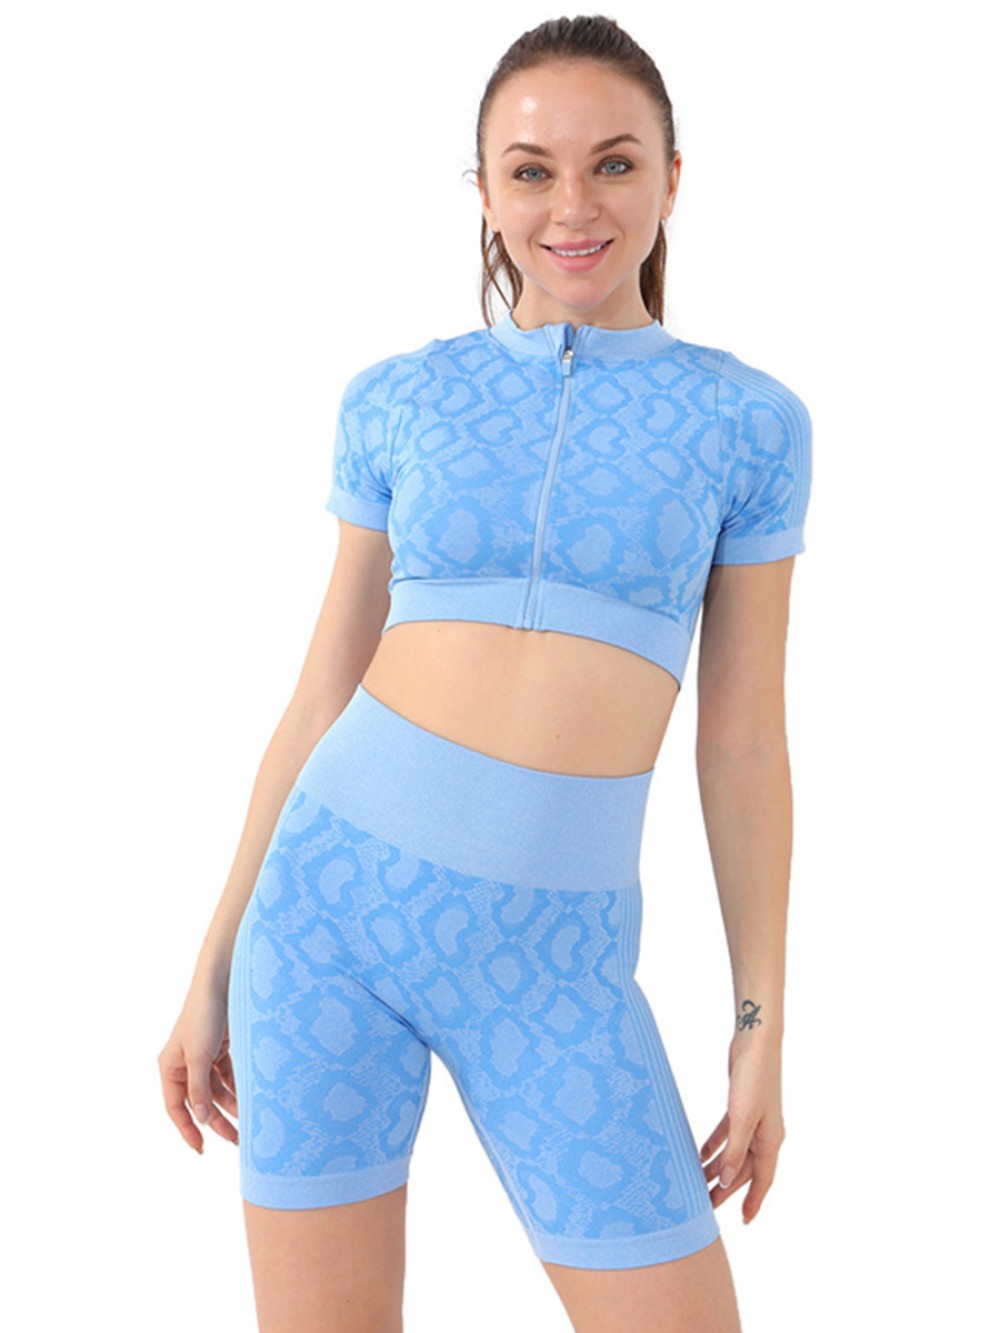 New Arrivals Zipper Front Tight Crop Top And Shorts Jogging Wear Yoga Set